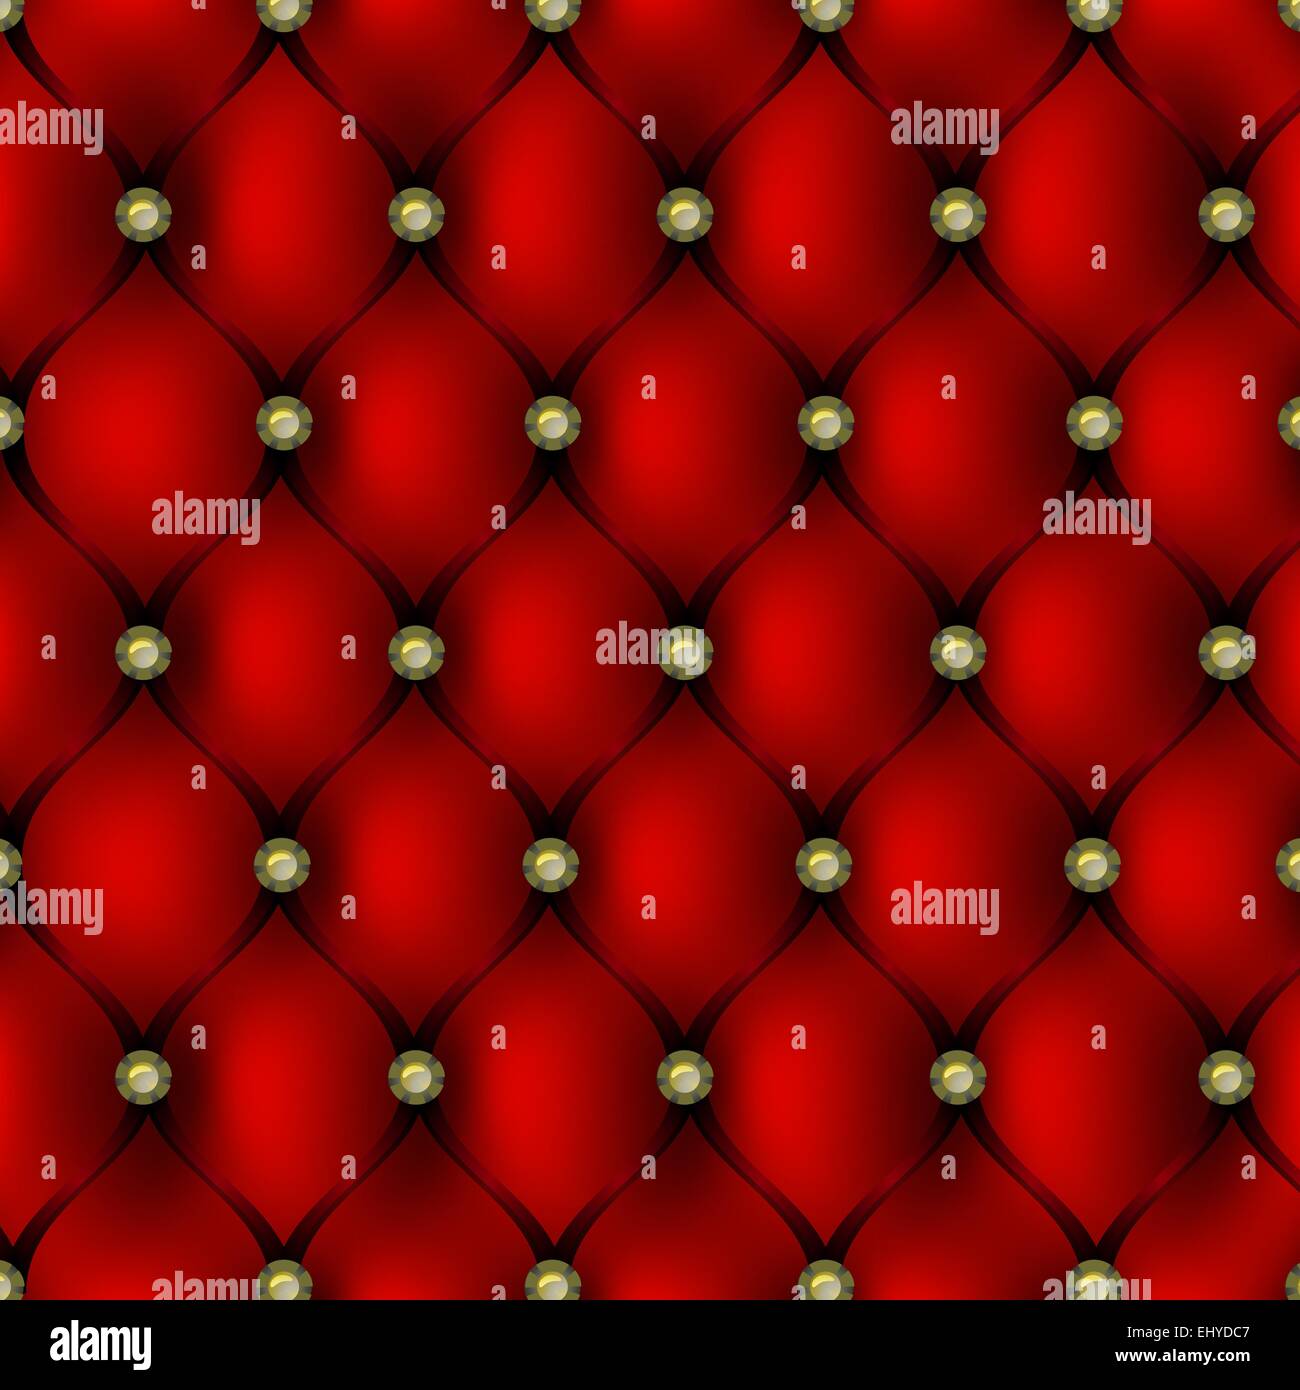 Rote Lederausstattung mit gold Muster Schaltflächenhintergrund, Vektor-illustration Stock Vektor